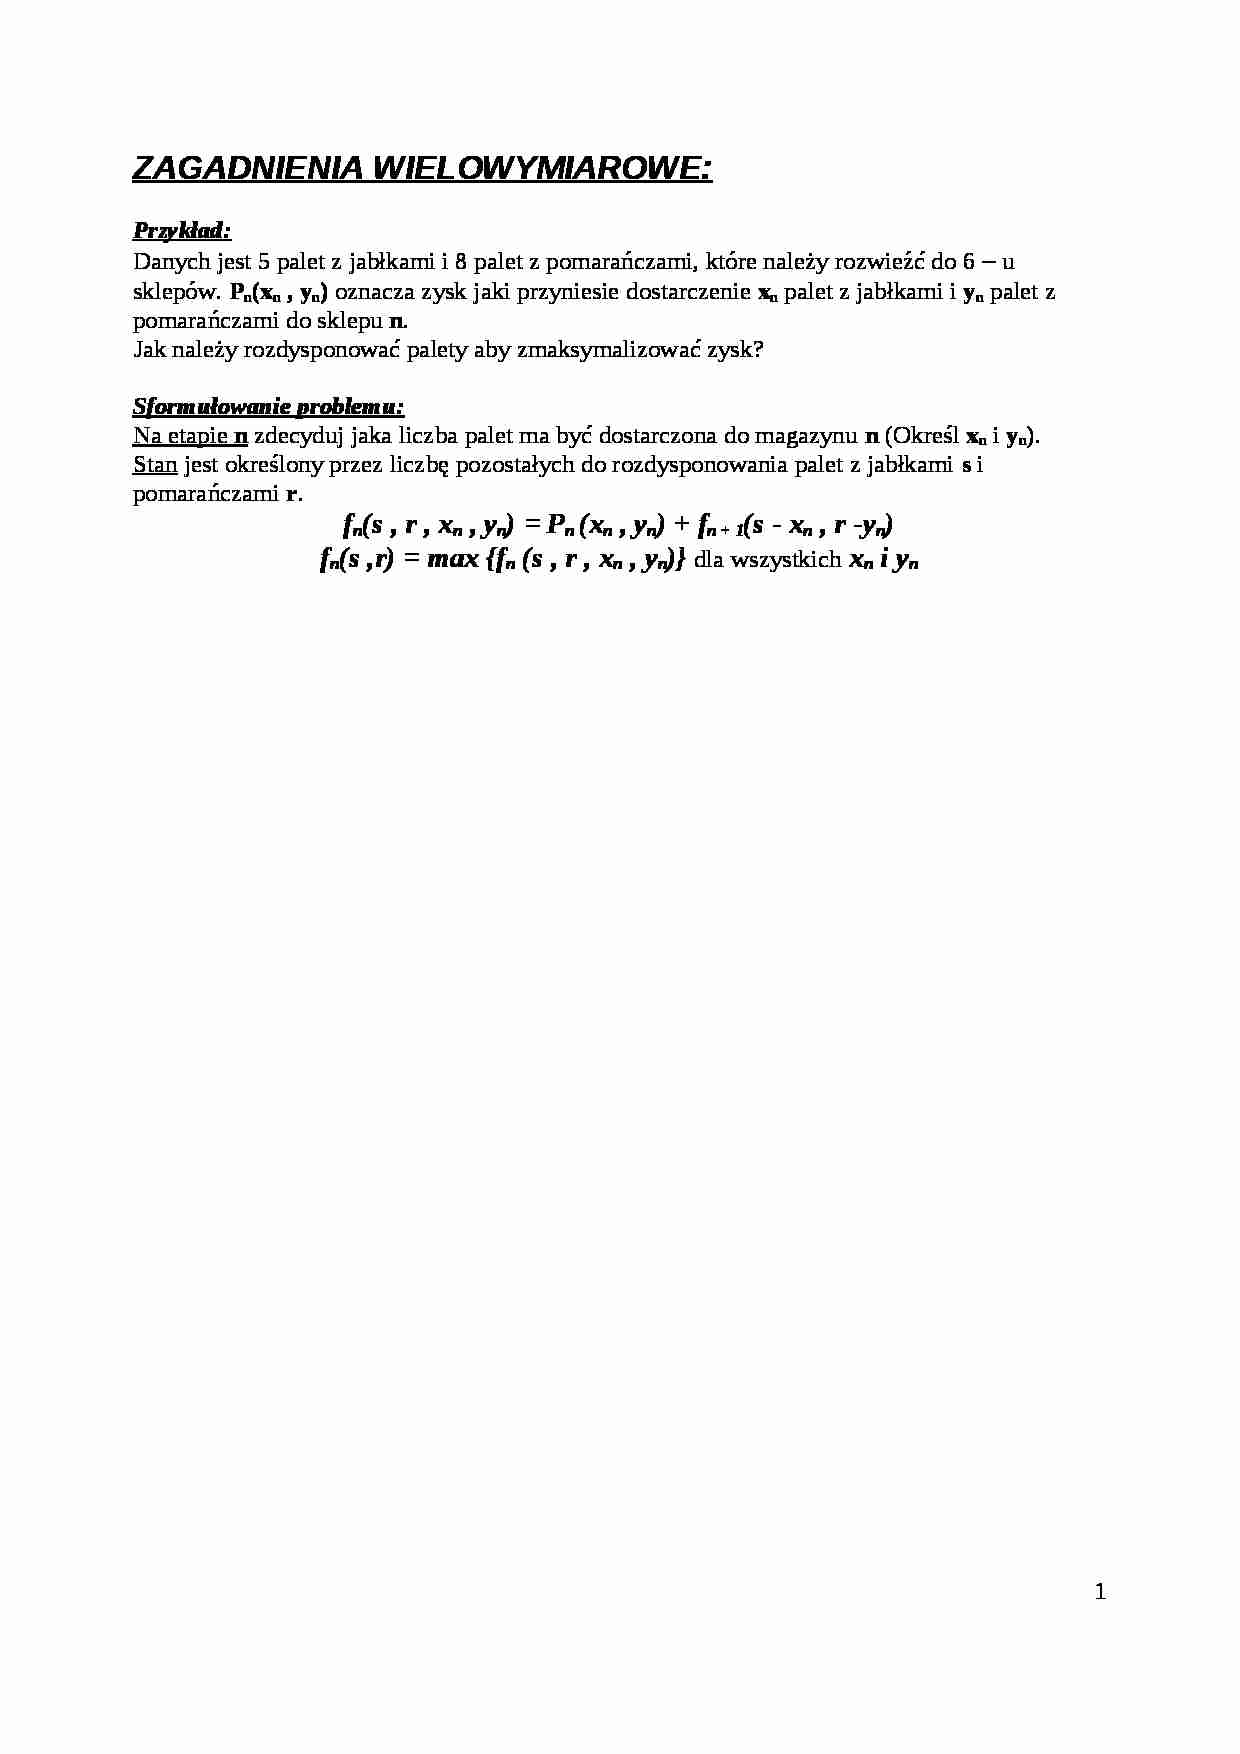 Zagadnienia wielowymiarowe - wykład - strona 1